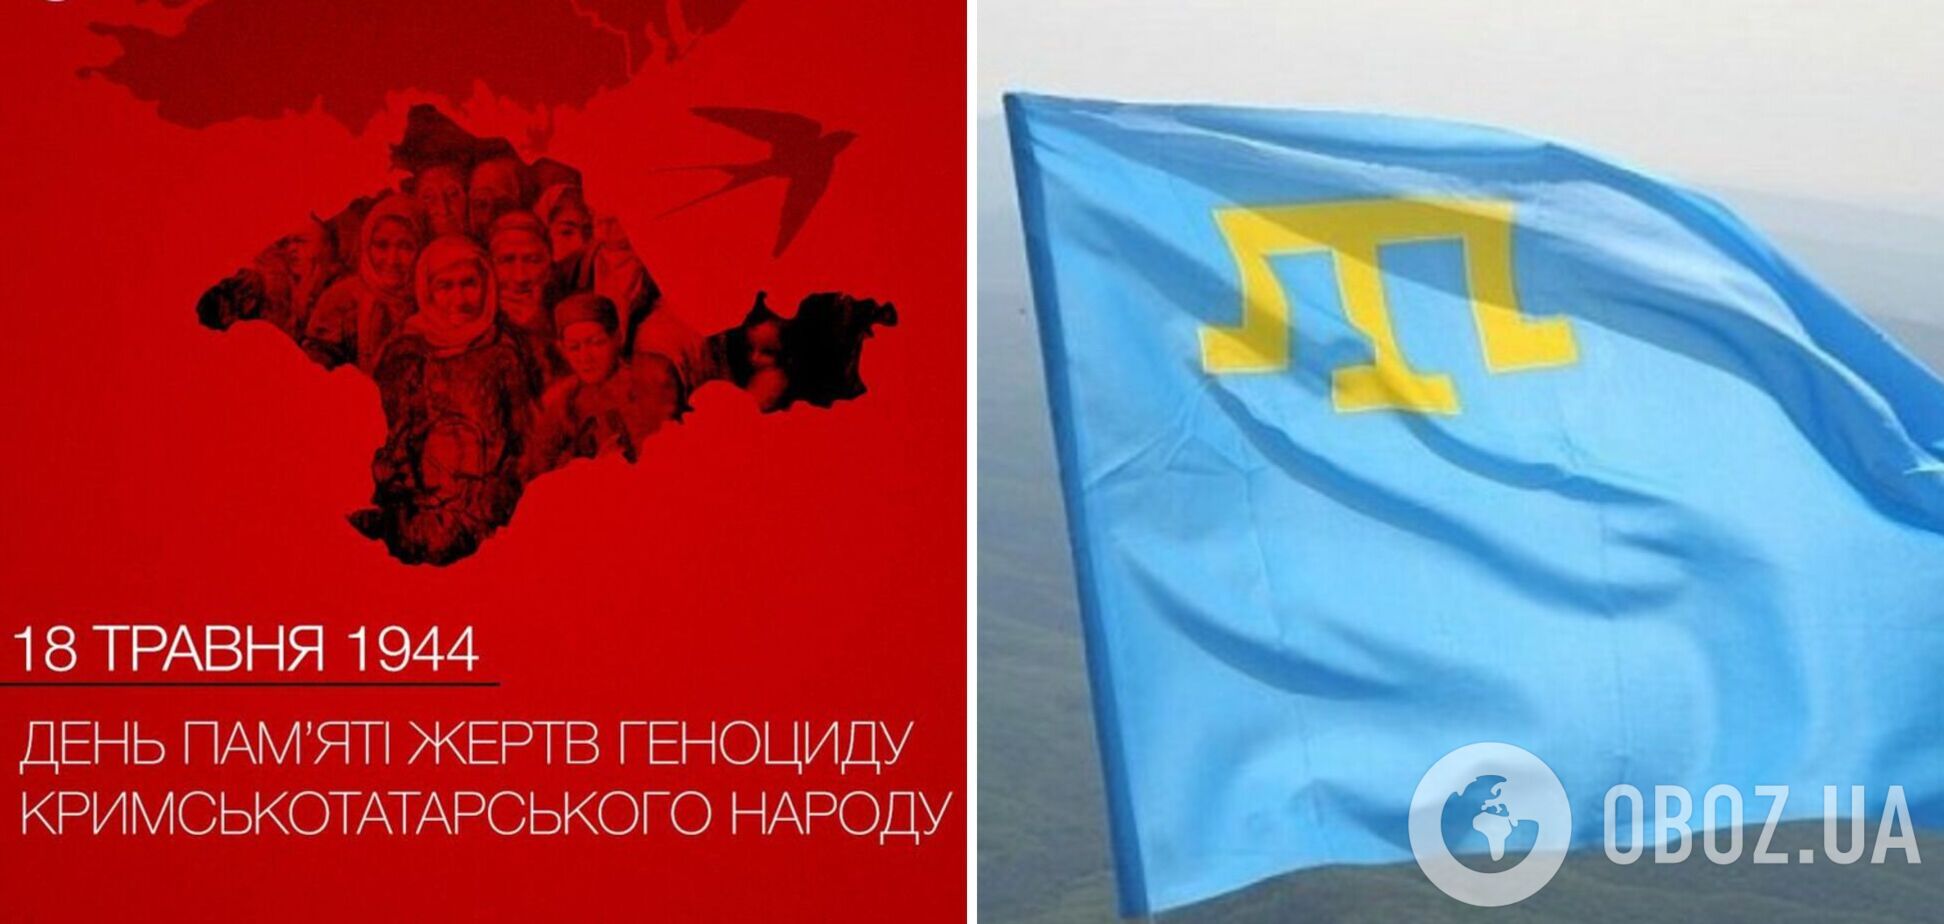 Порошенко в годовщину депортации крымскотатарского народа: у нас один враг и одна Украина